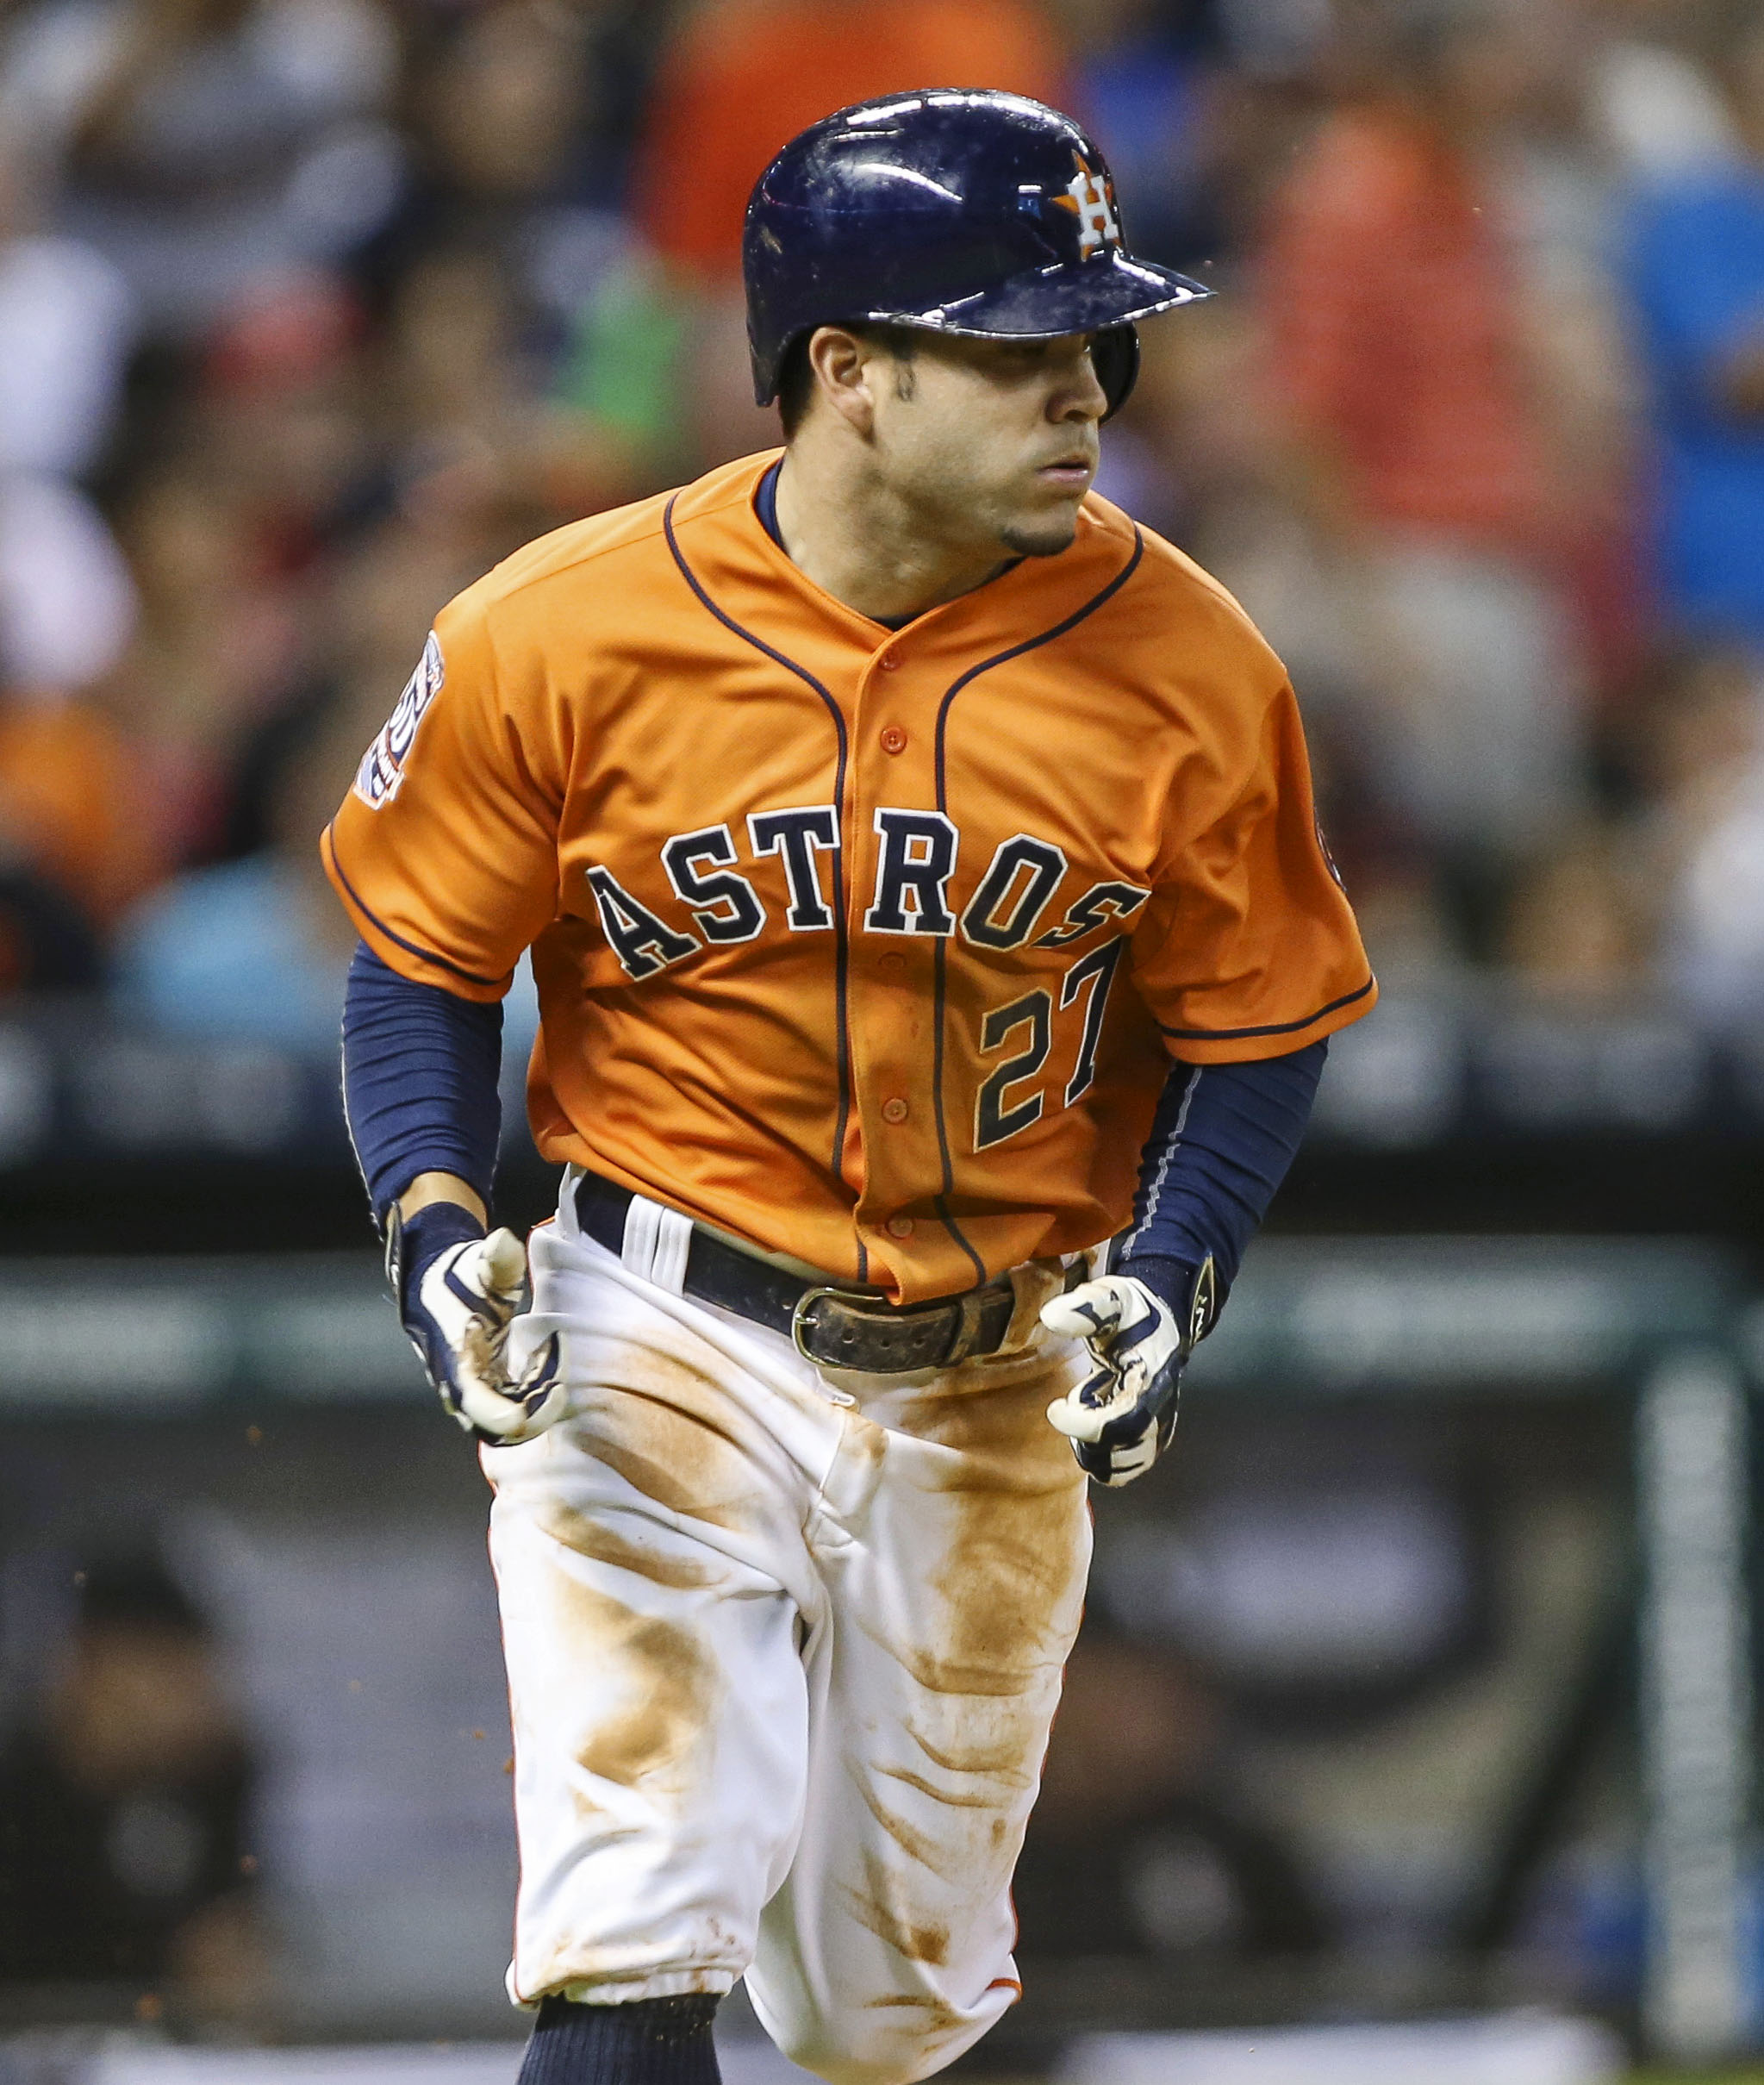 HOUSTON, TX - APRIL 29: Jose Altuve (27) of the Houston Astros